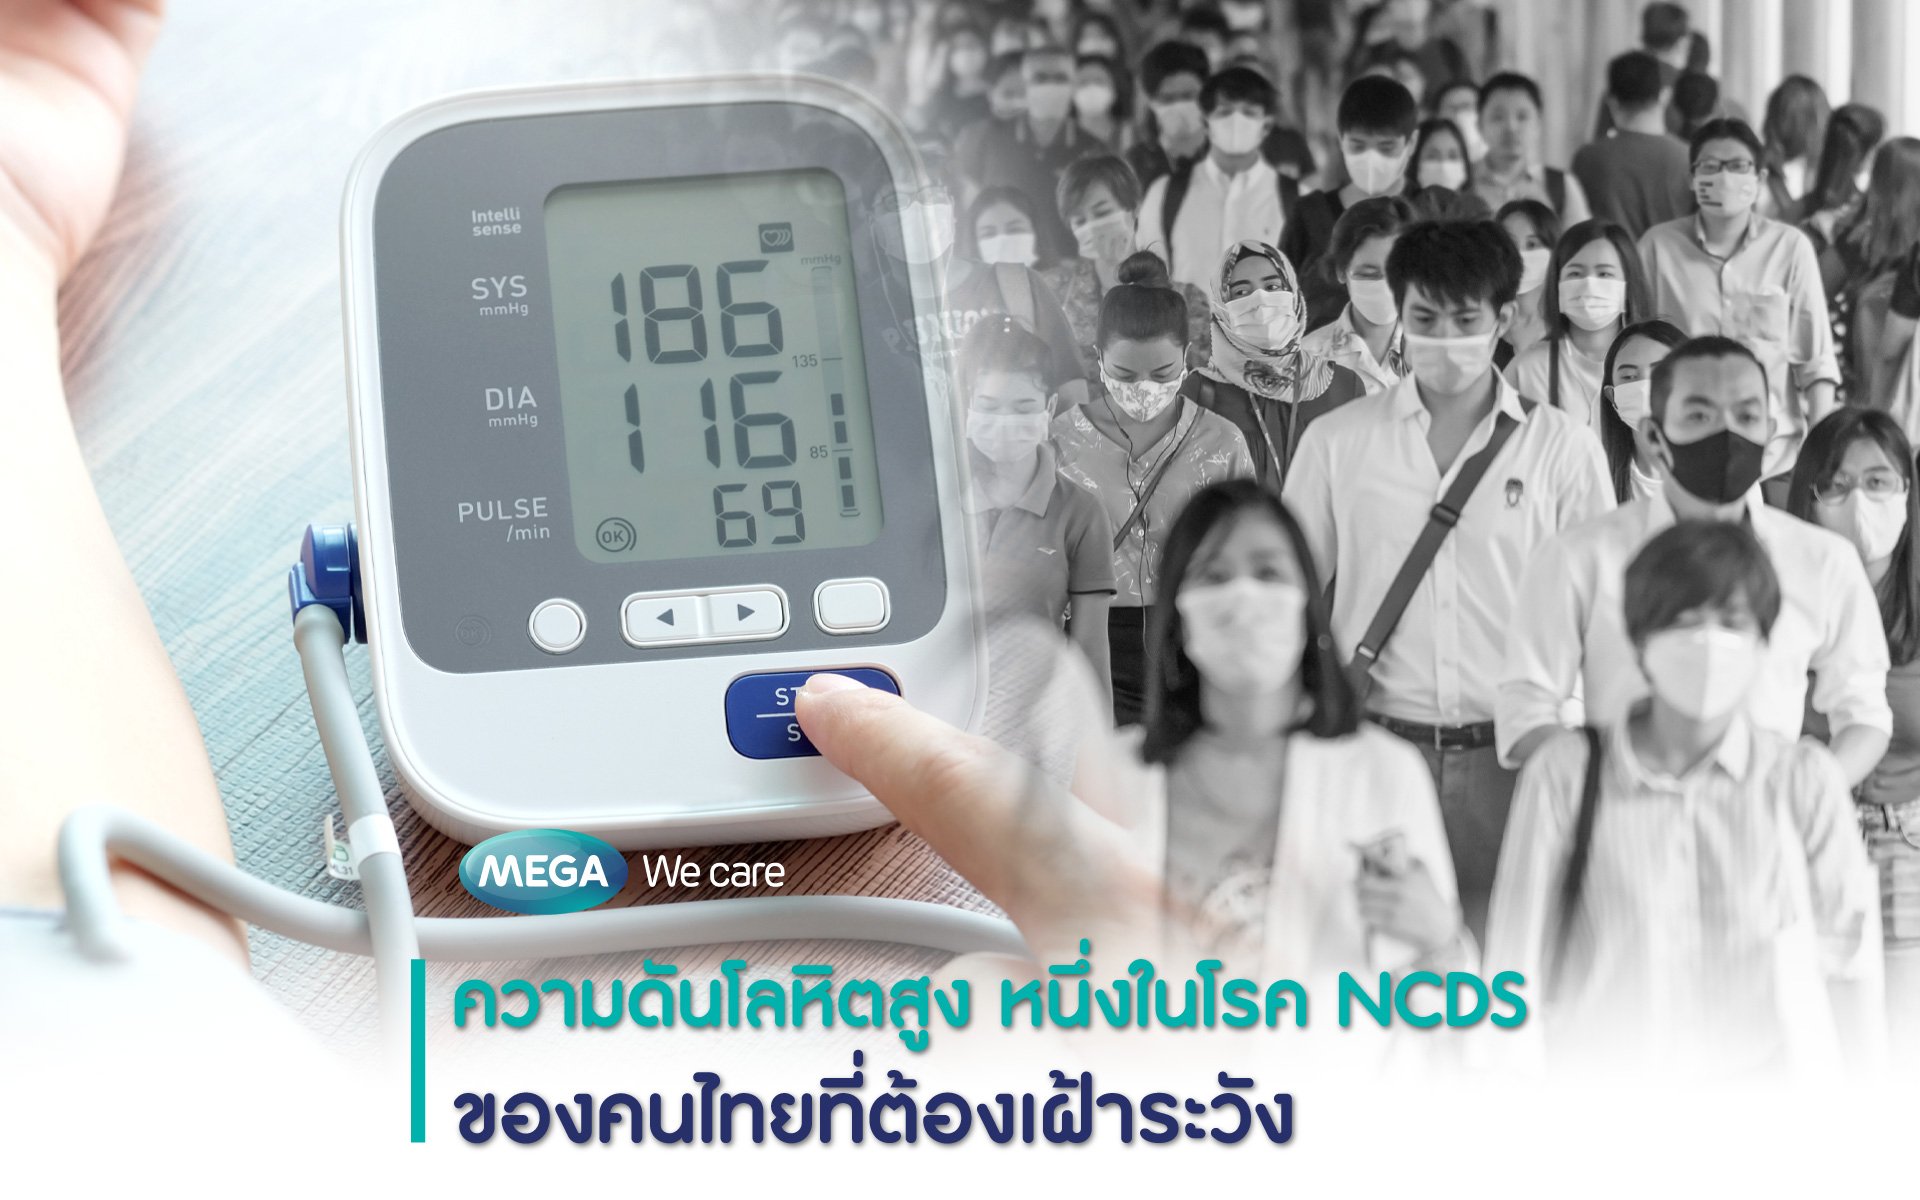 ความดันโลหิตสูง หนึ่งในโรค NCDS ของคนไทยที่ต้องเฝ้าระวัง